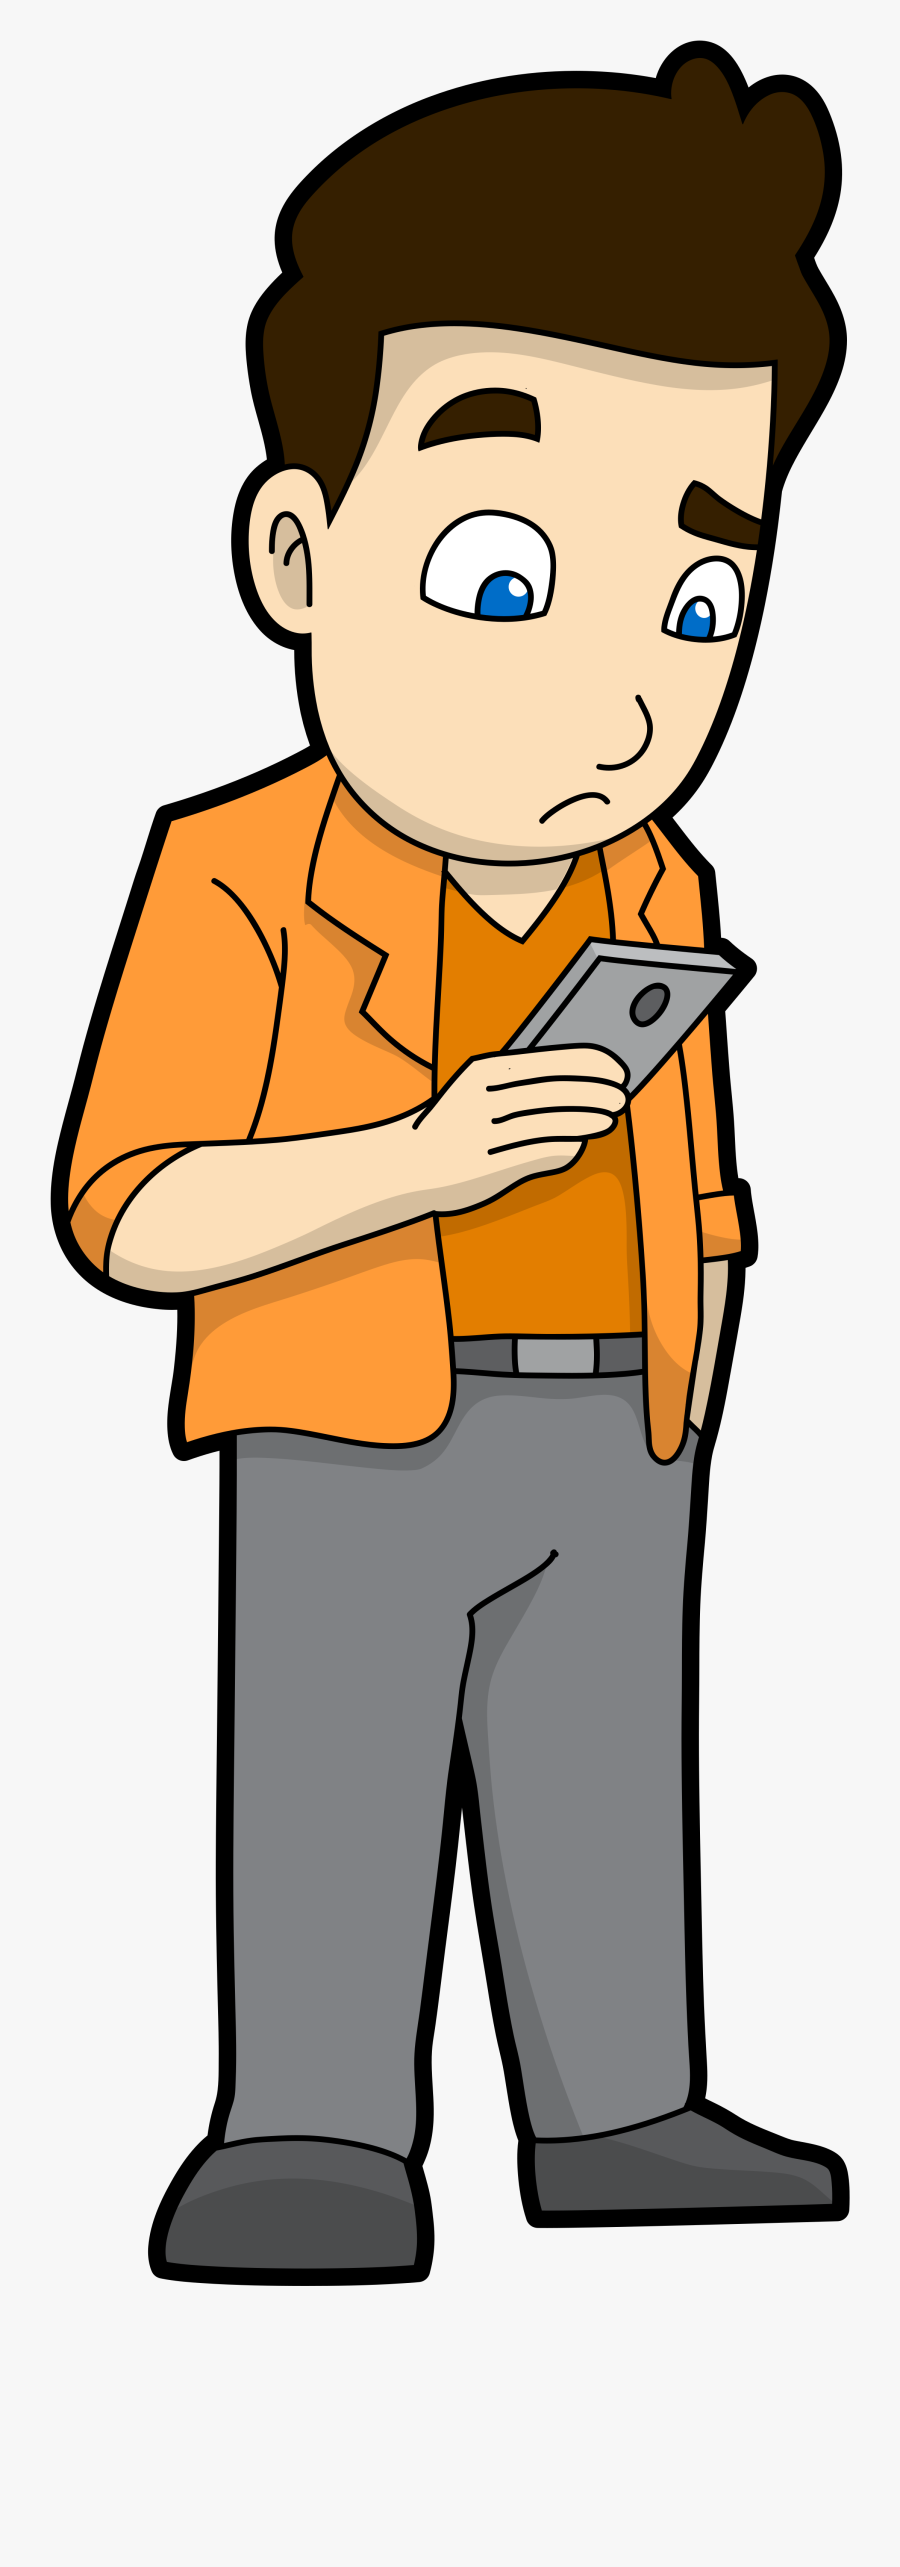 Transparent Sad Kids Clipart - Cartoon Man On Phone, Transparent Clipart